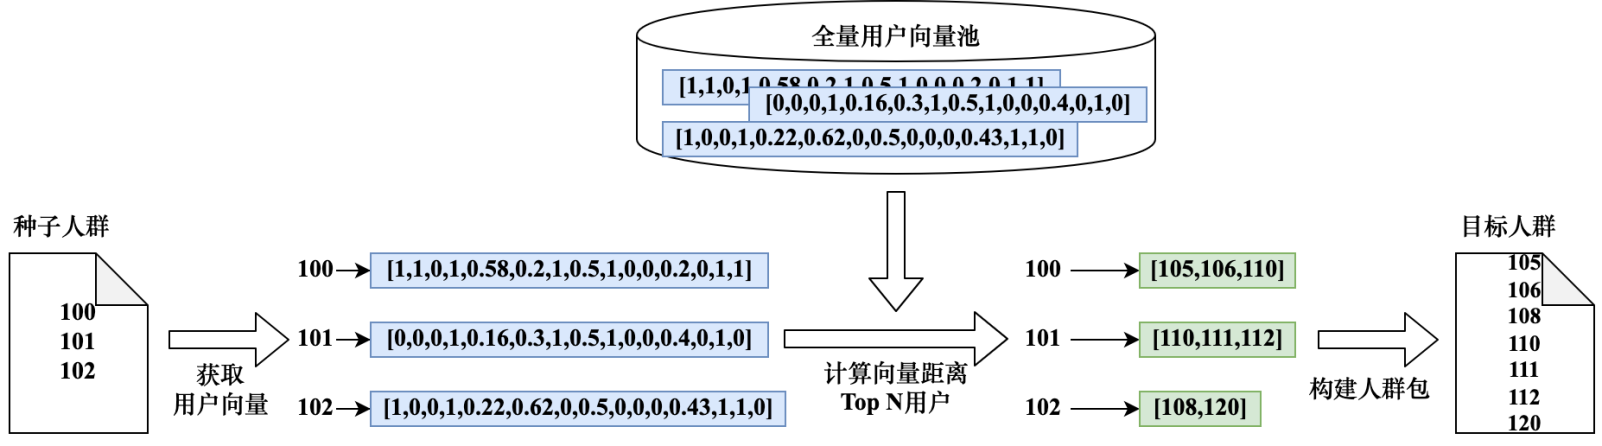 图5-26 基于用户向量进行相似度计算流程图